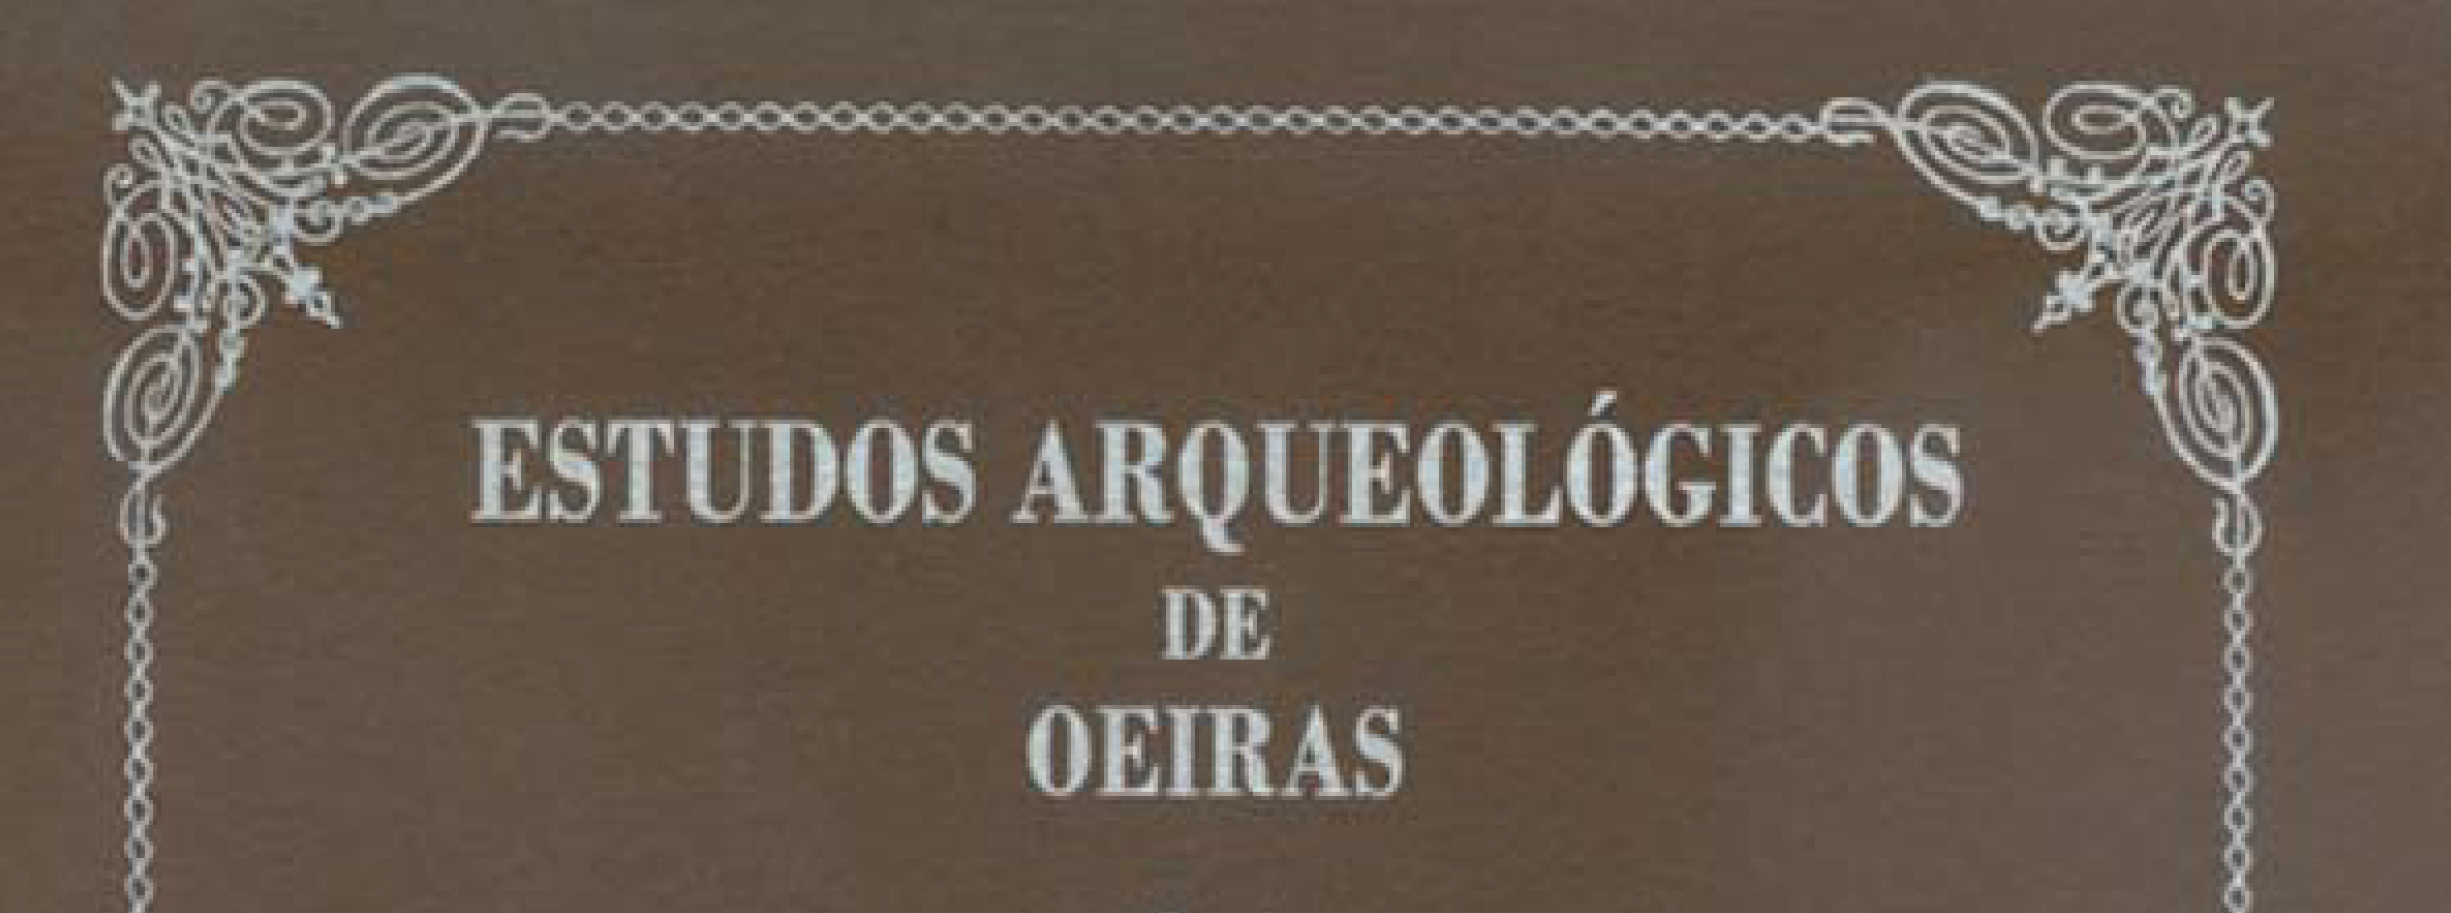 Estudos Arqueológicos de Oeiras, 24